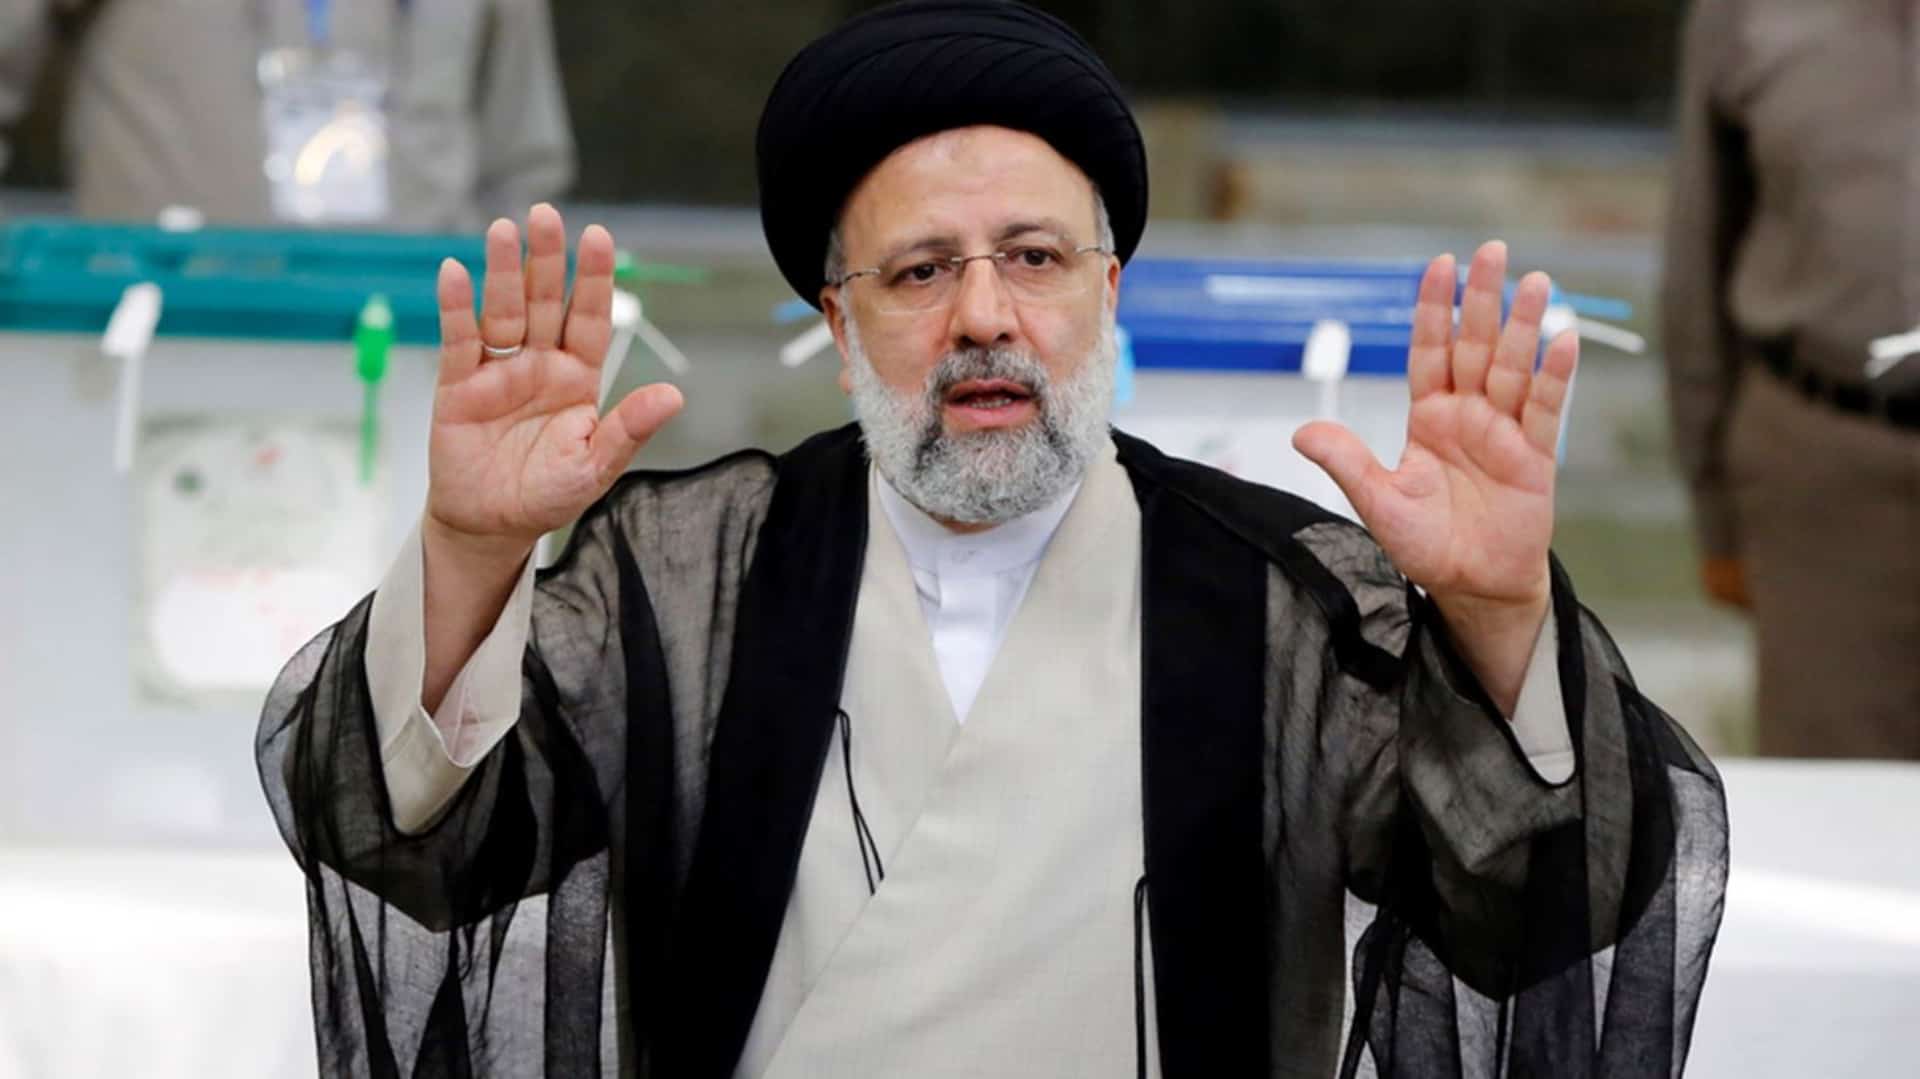 Ο Πρόεδρος του Ιράν απειλεί με αντίποινα για την επίθεση στην ιρανική πρεσβεία στη Δαμασκό